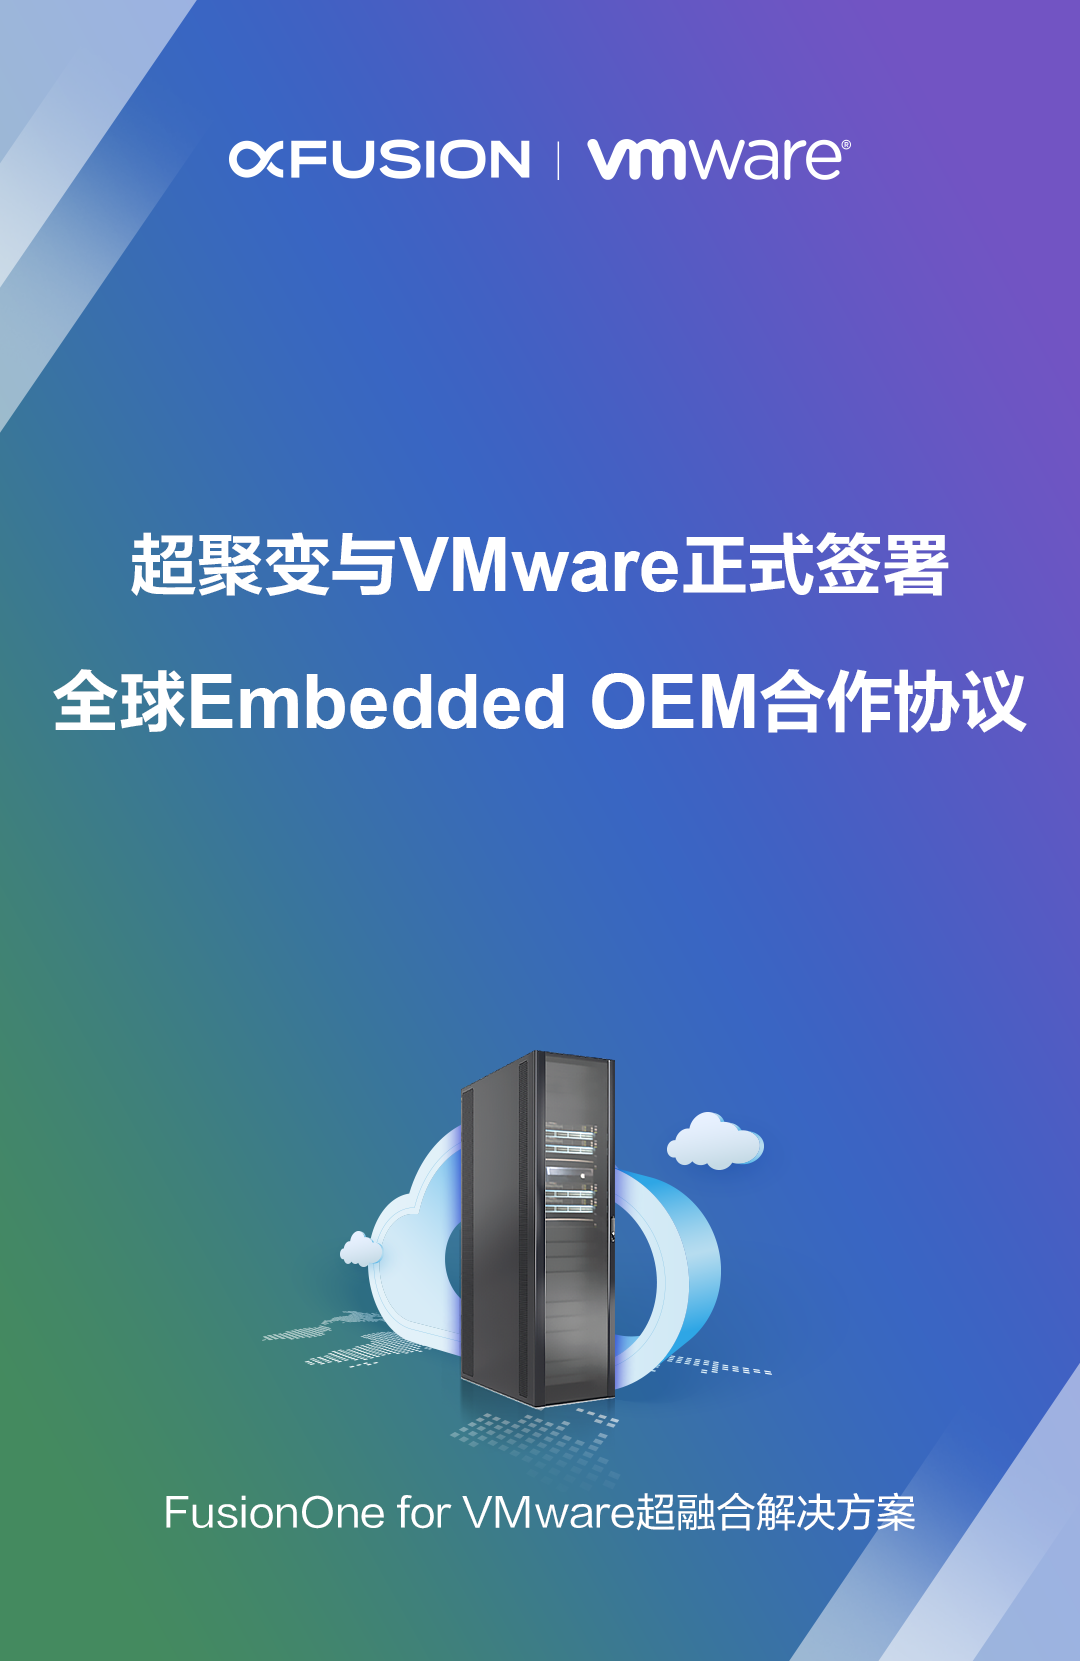 超聚变与VMware签署全球Embedded OEM协议